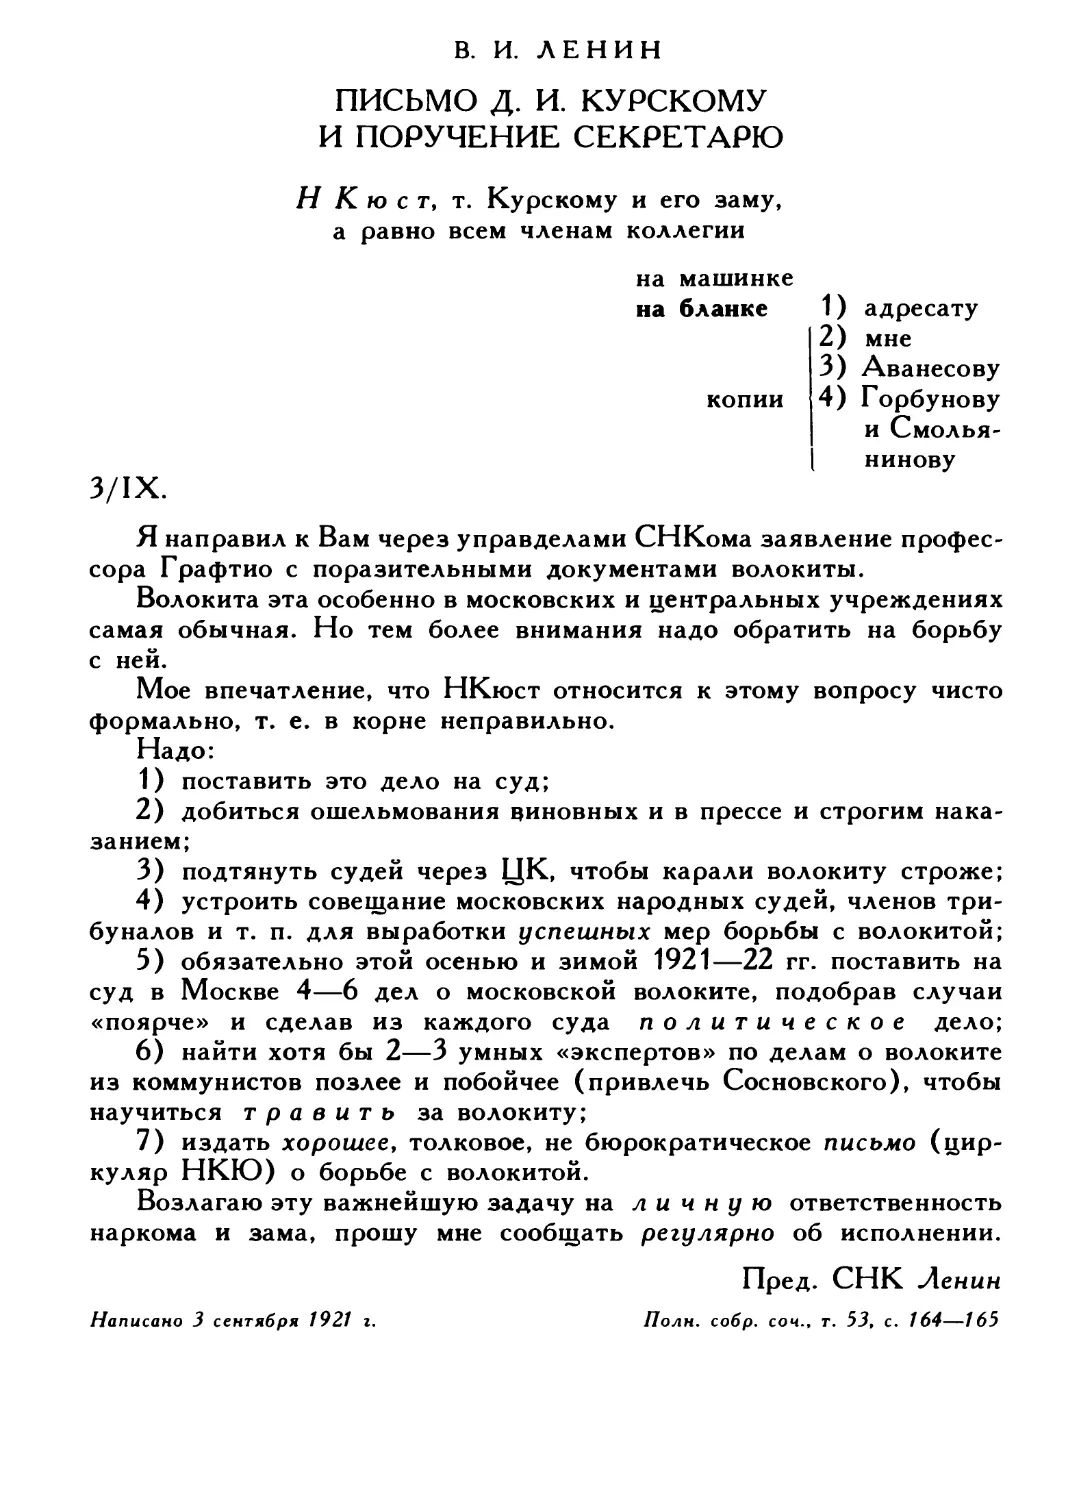 В. И. Ленин. Письмо Д. И. Курскому и поручение секретарю, 3 сентября 1921 г.